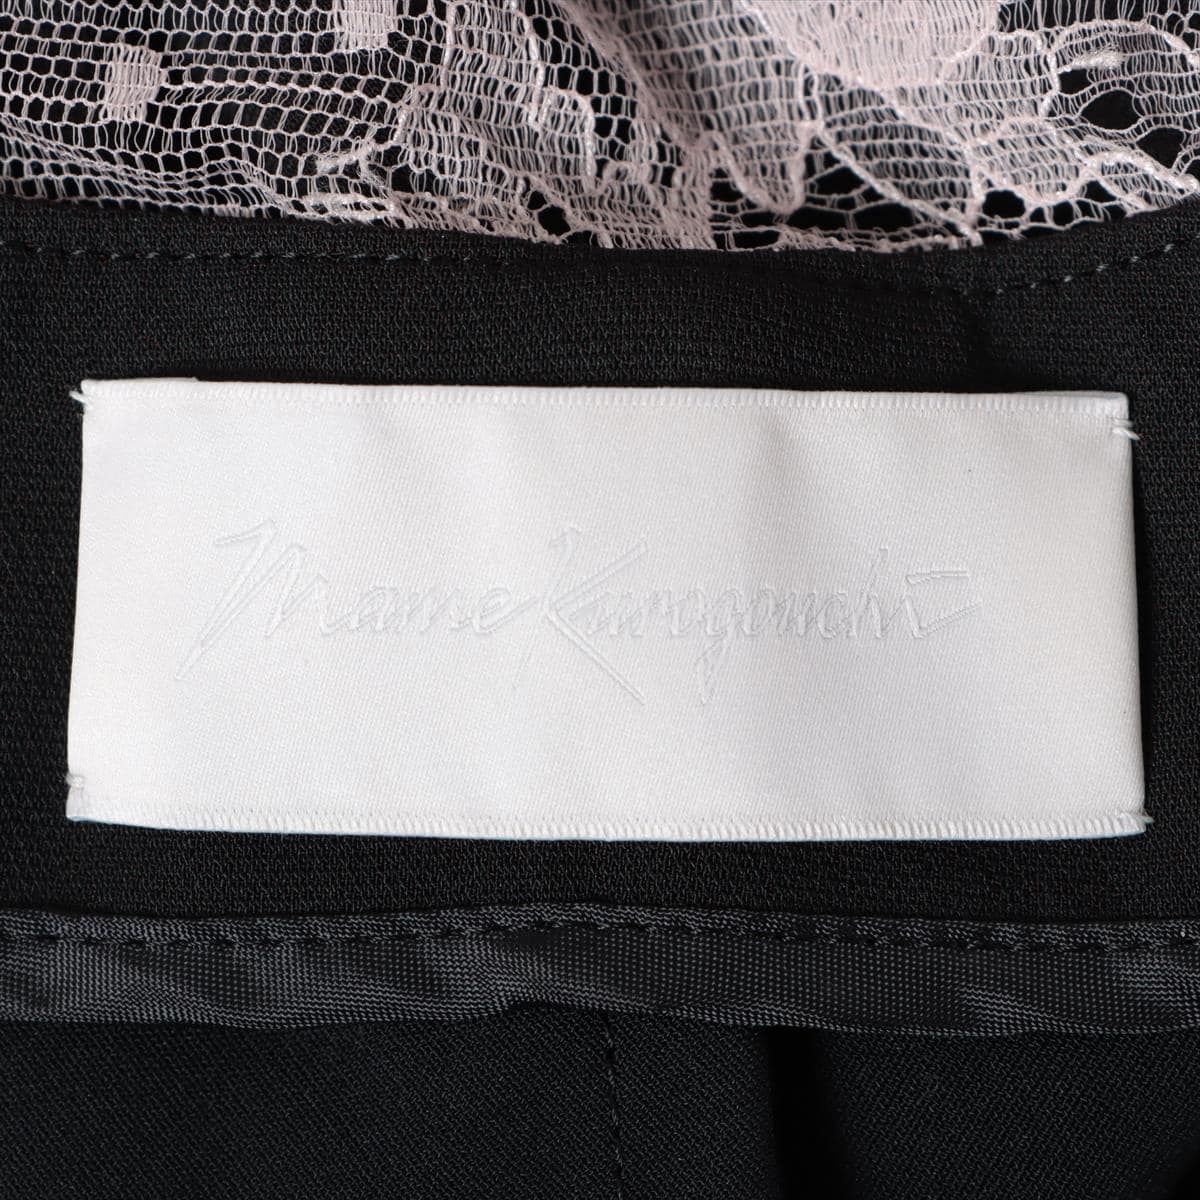 マメクロゴウチ 20SS ポリエステル ノースリーブワンピース 1 レディース ブラック  MM20PS-DR708 Embroidery Collar Sless Dress